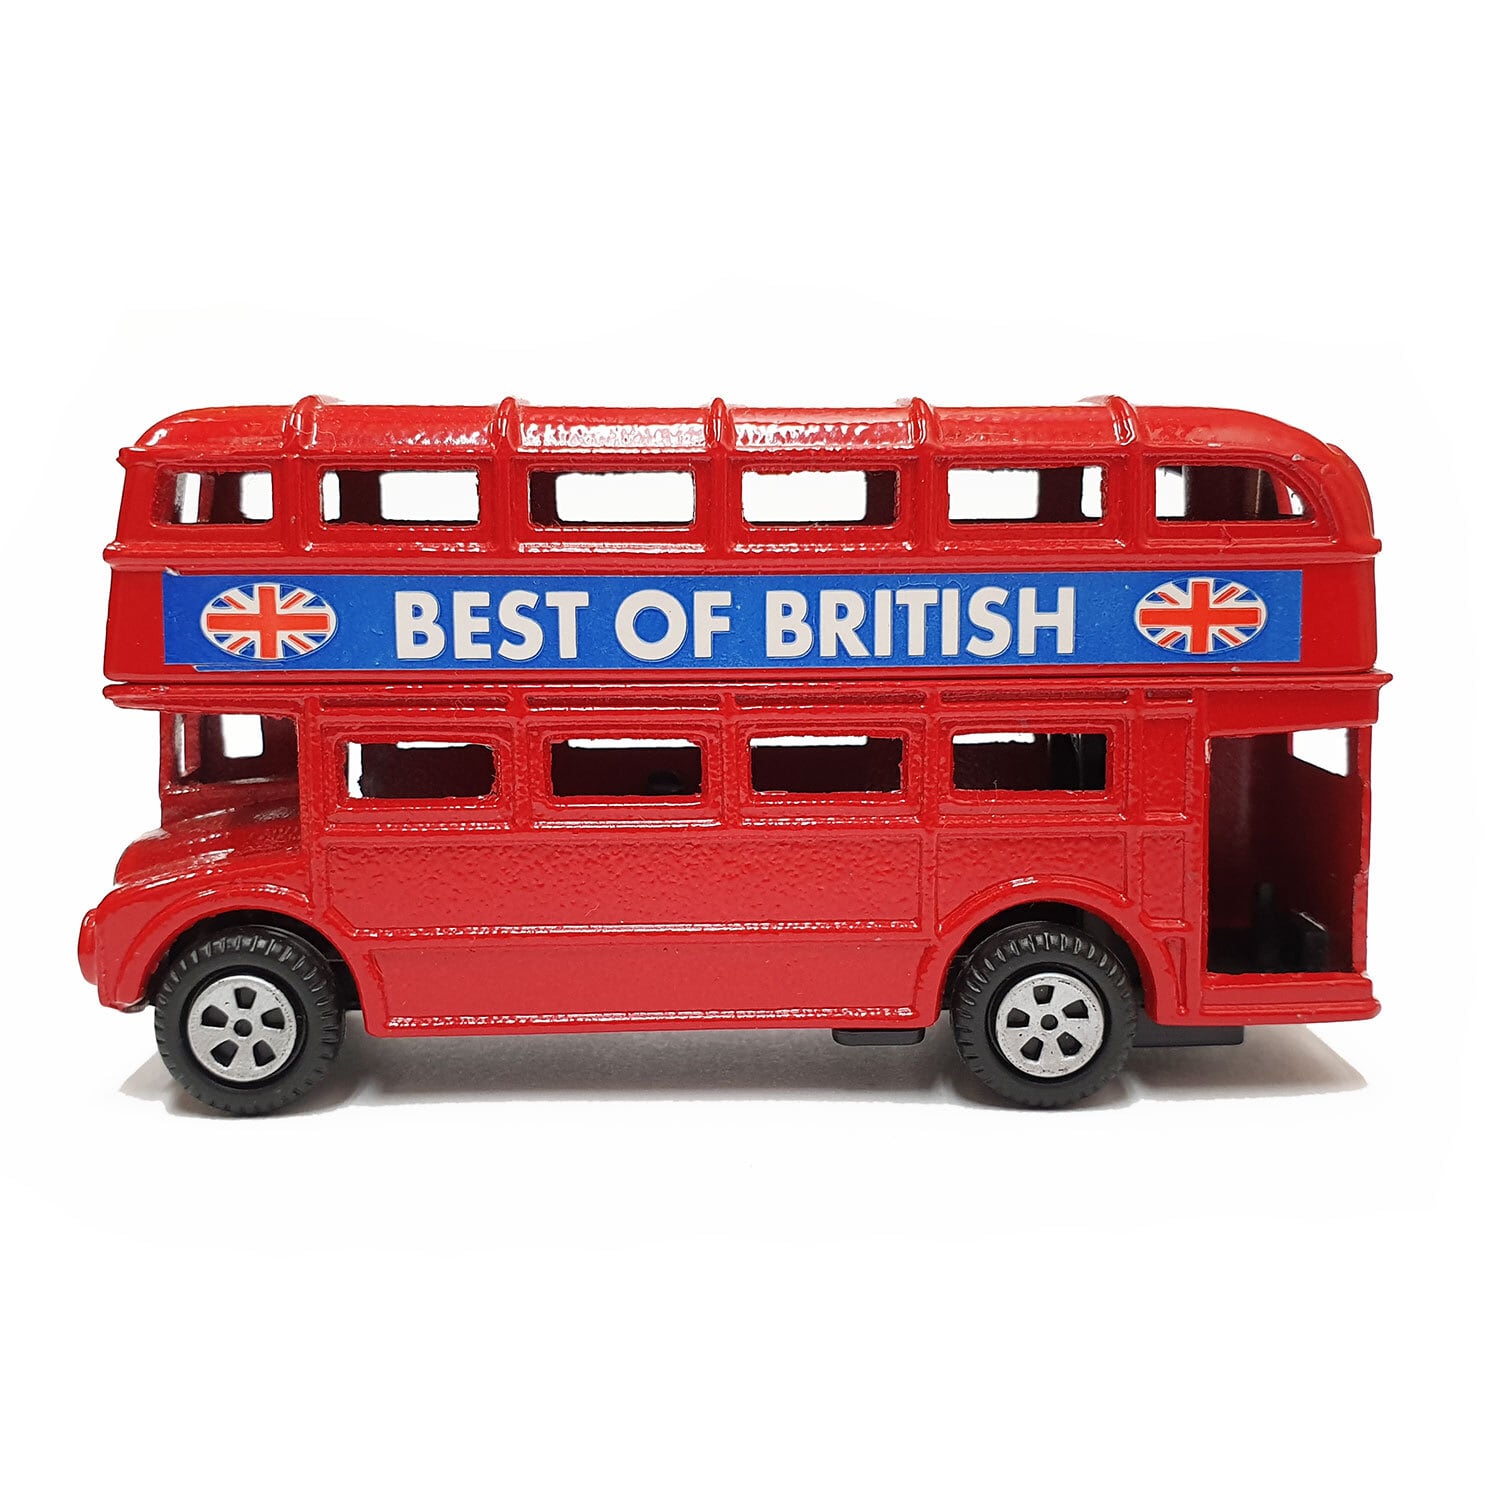 ロンドンバス型ミニカー【鉛筆削り機能付き】Elgate Products 90019 英国雑貨専門店ブリティッシュ・ライフ